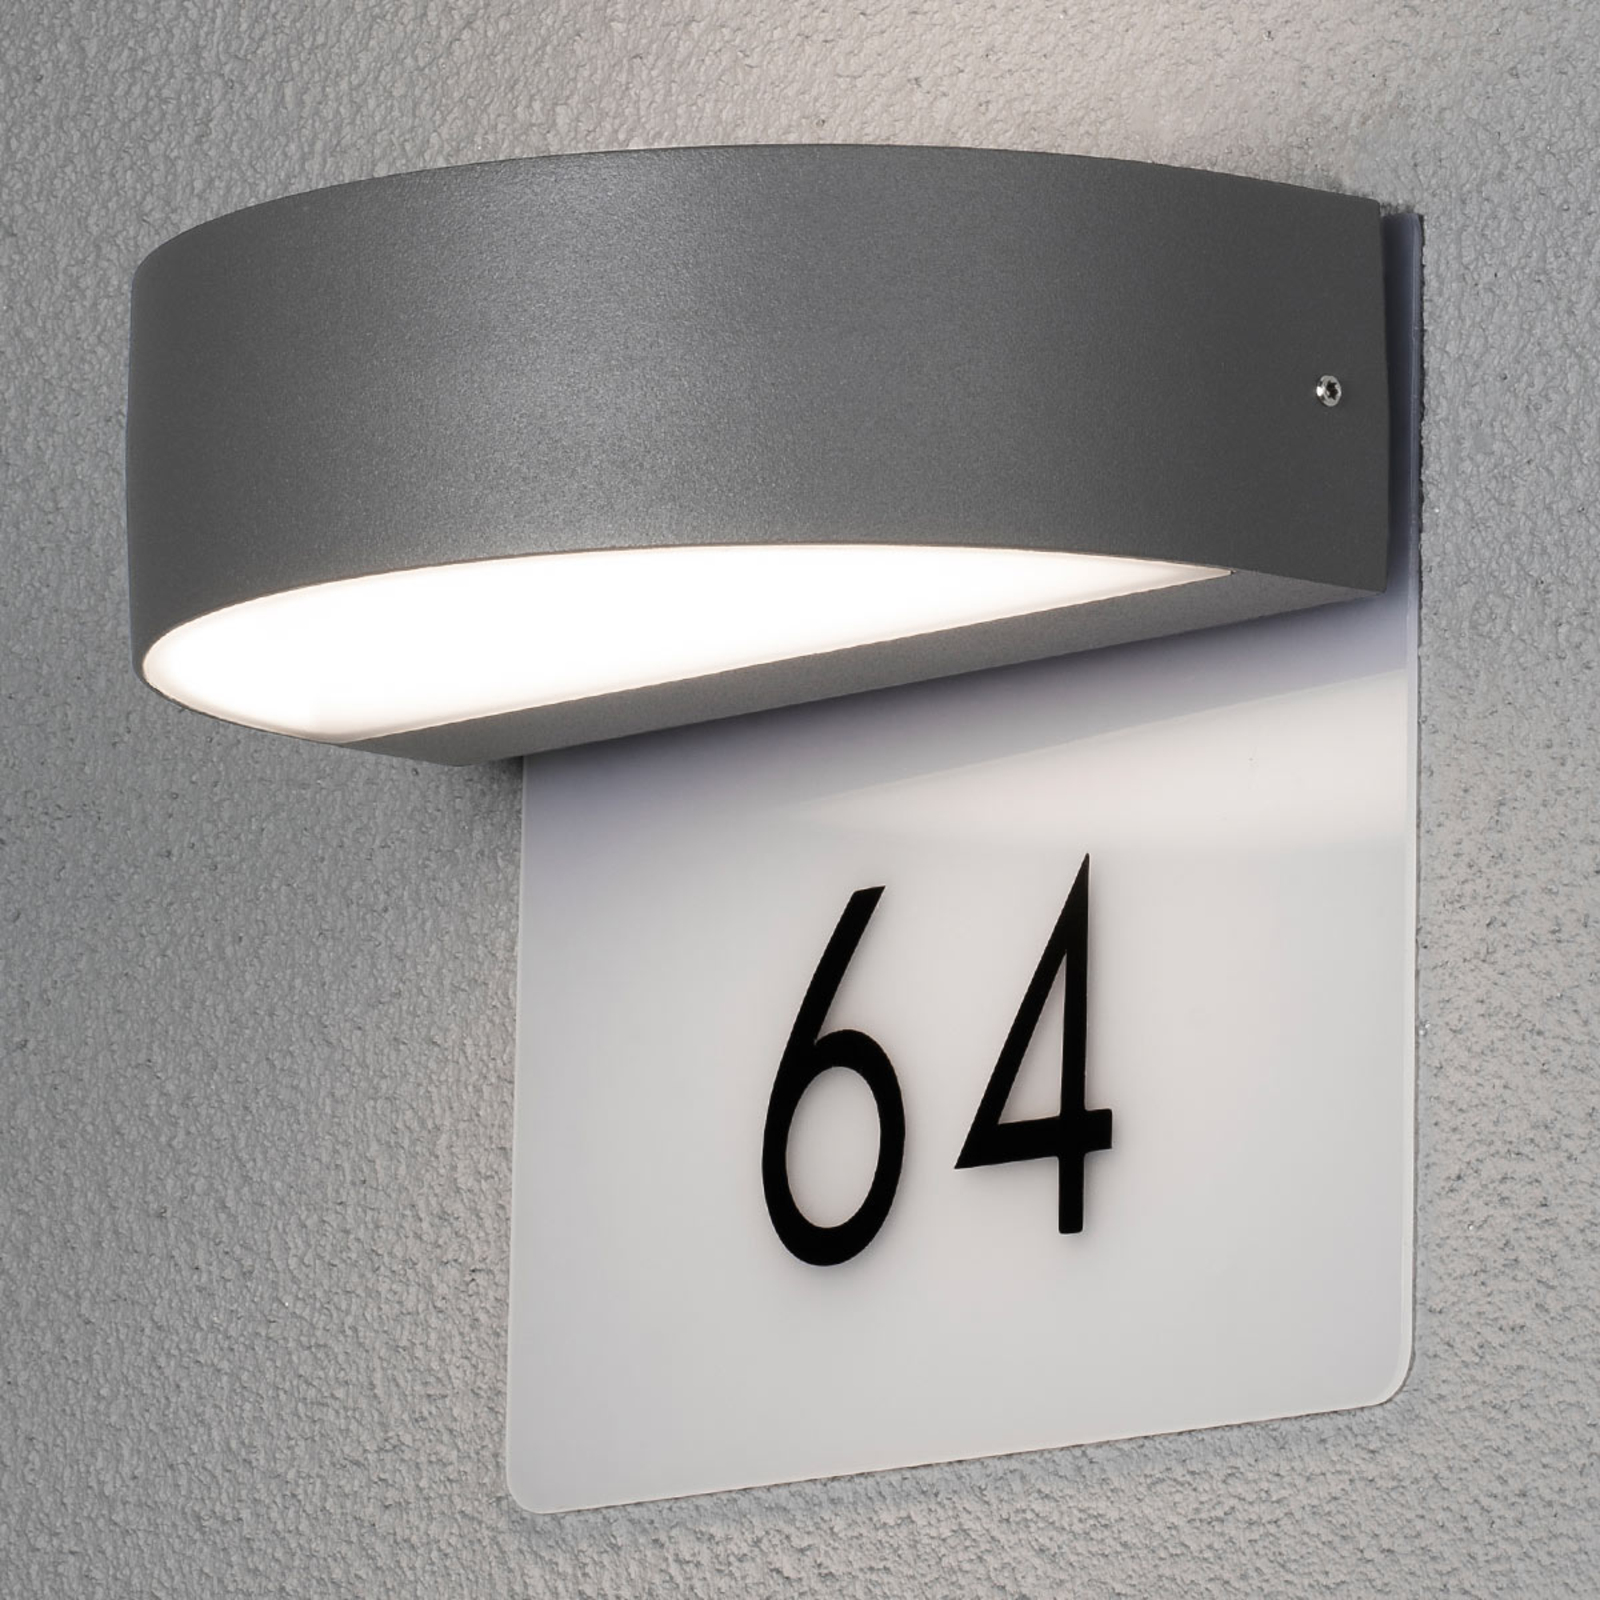 Moderne LED huisnummer lamp Monza incl. cijfers